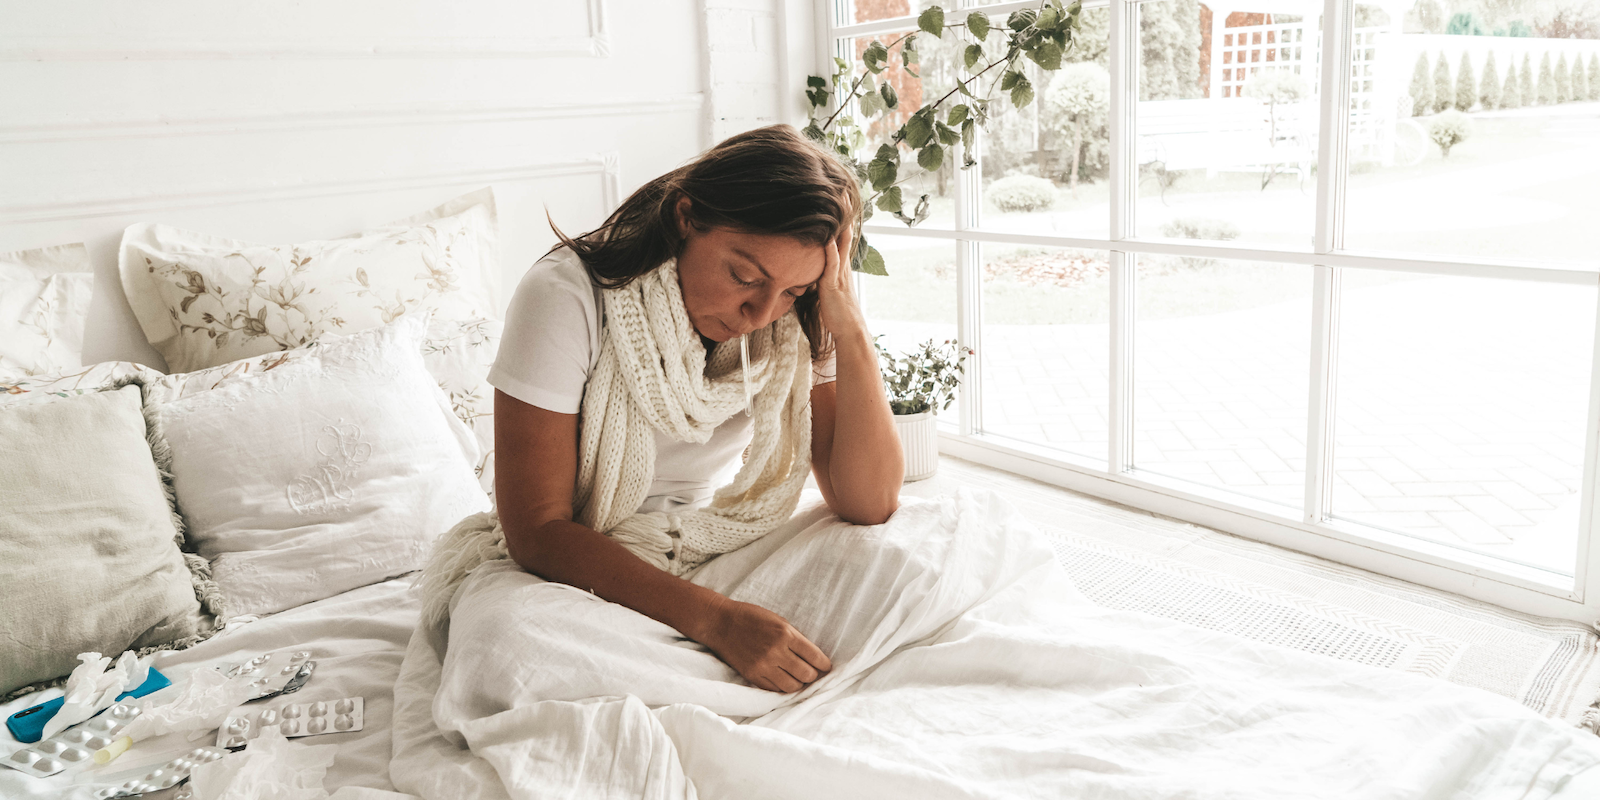 Fotografía de una mujer enferma sentada en la cama con la cabeza entre las manos, rodeada de medicamentos.